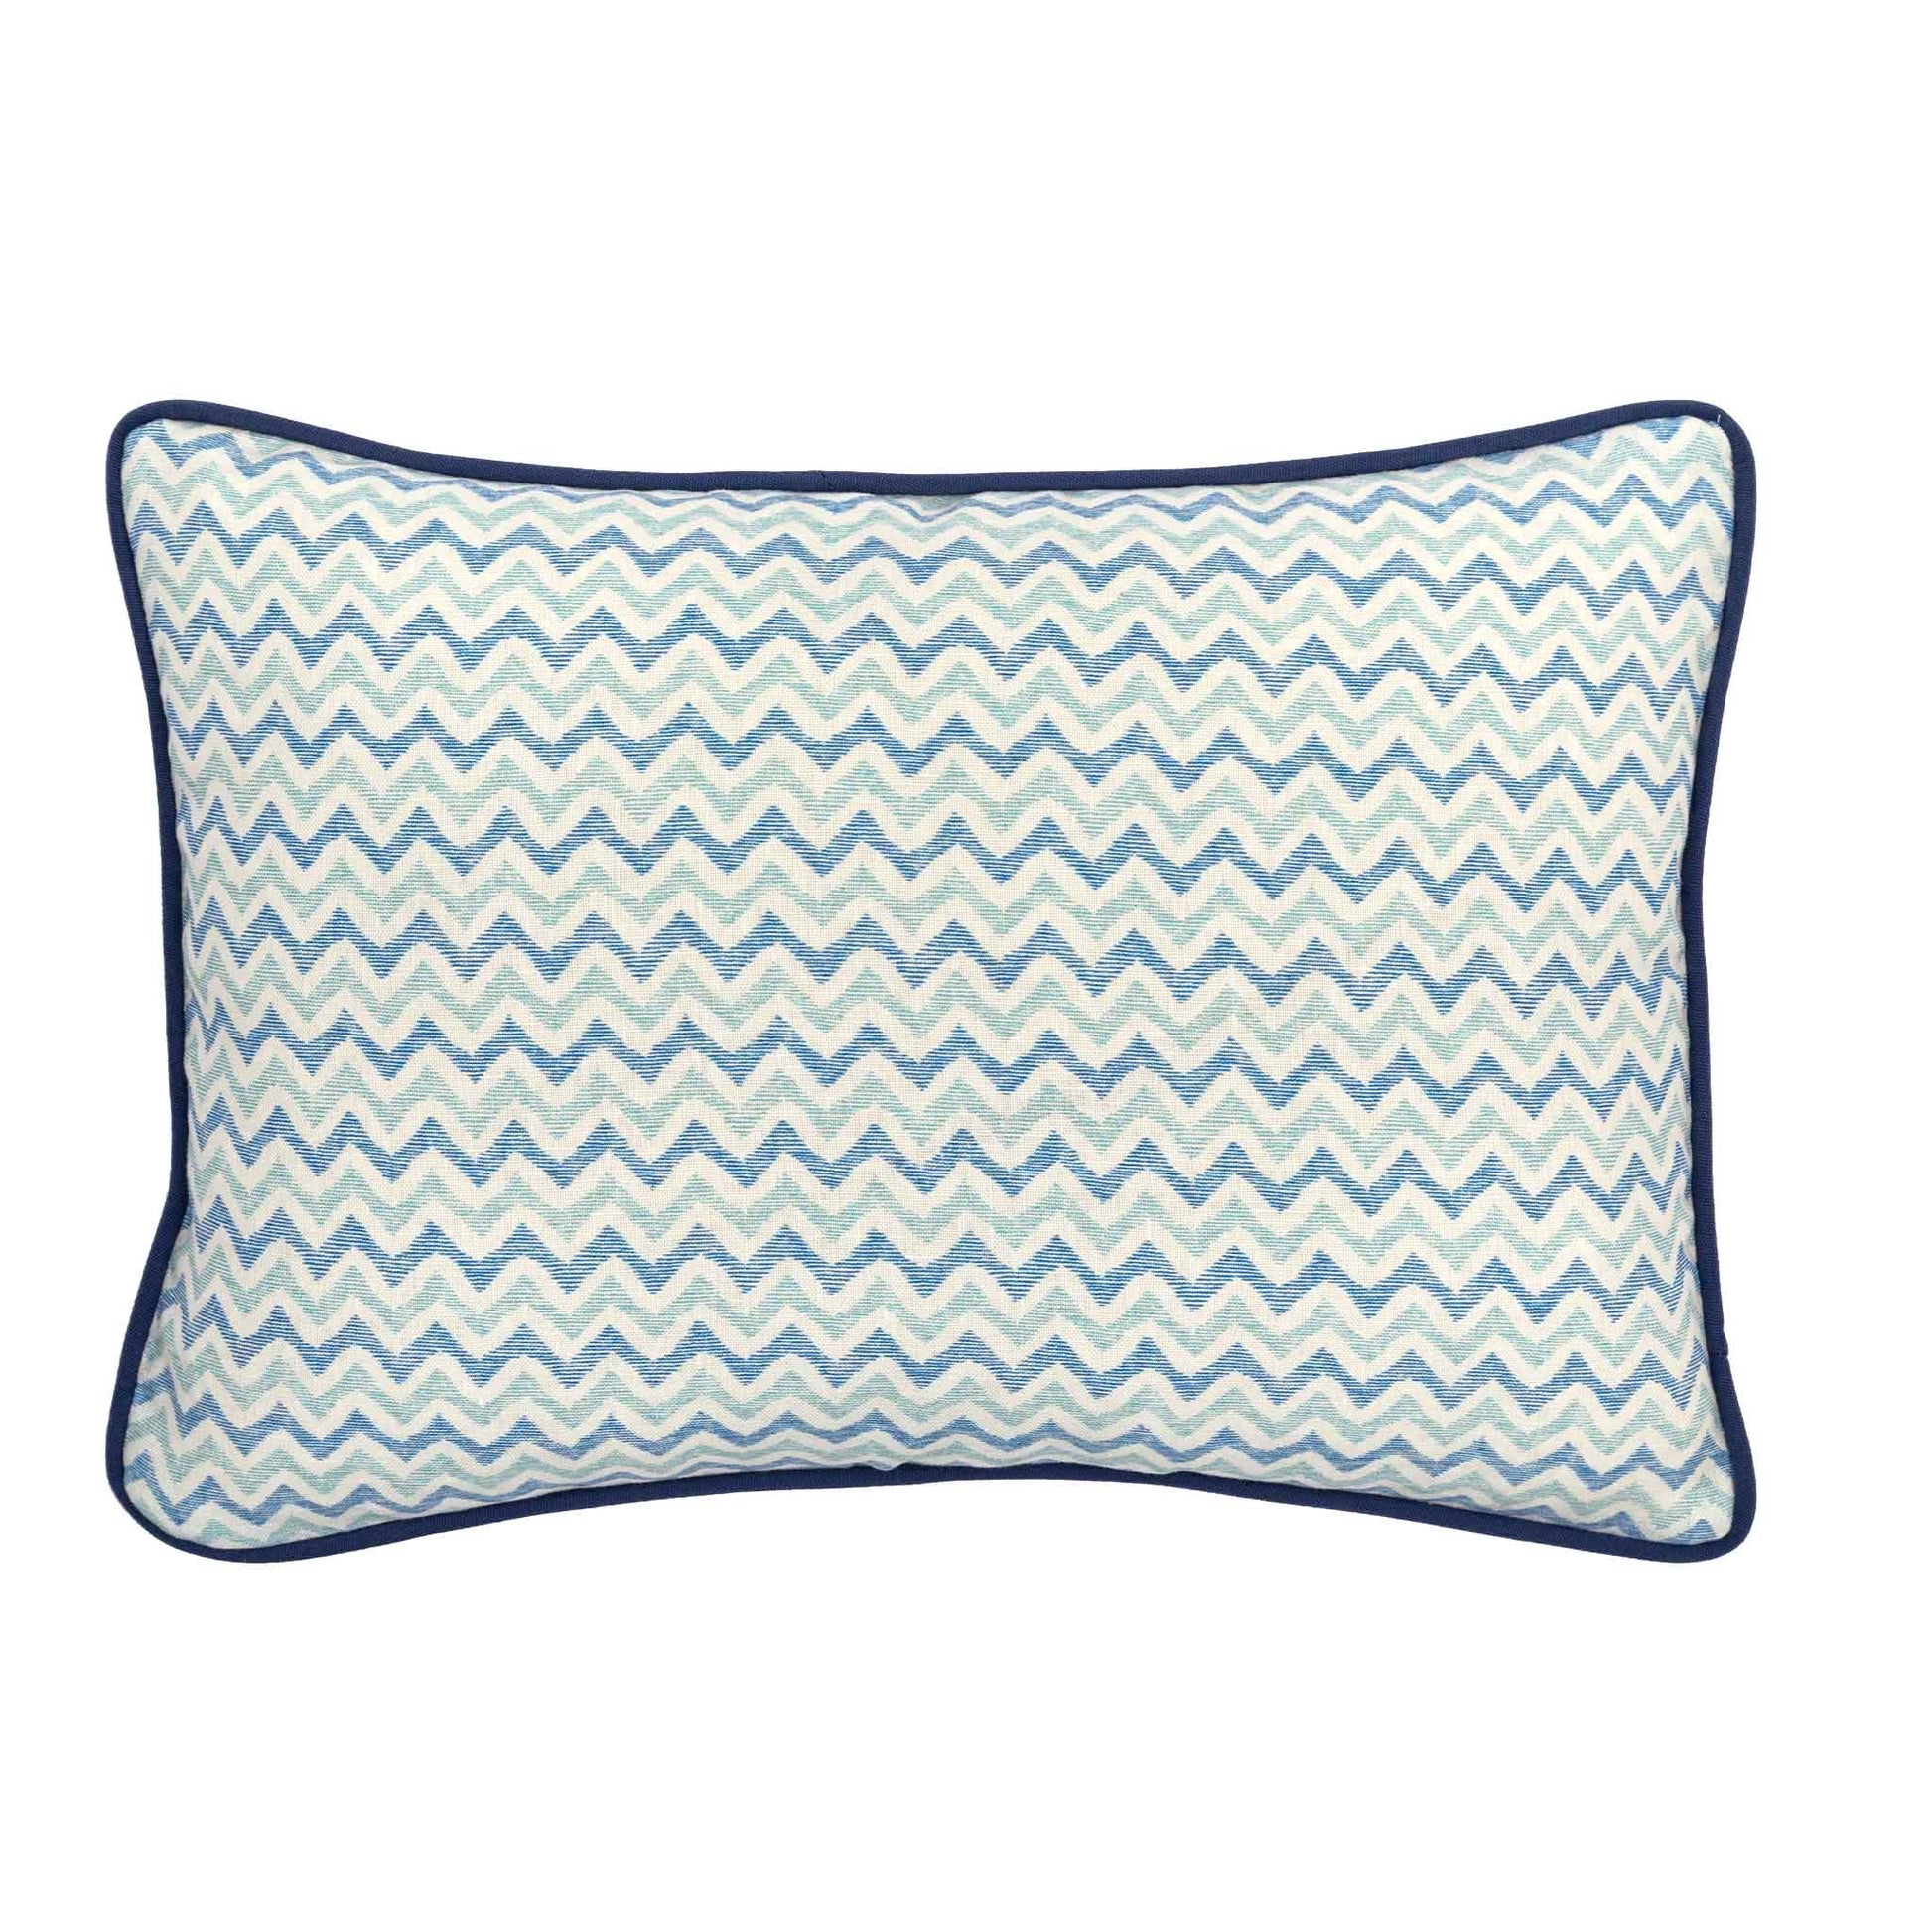 zig zag patterned cushion blue trim